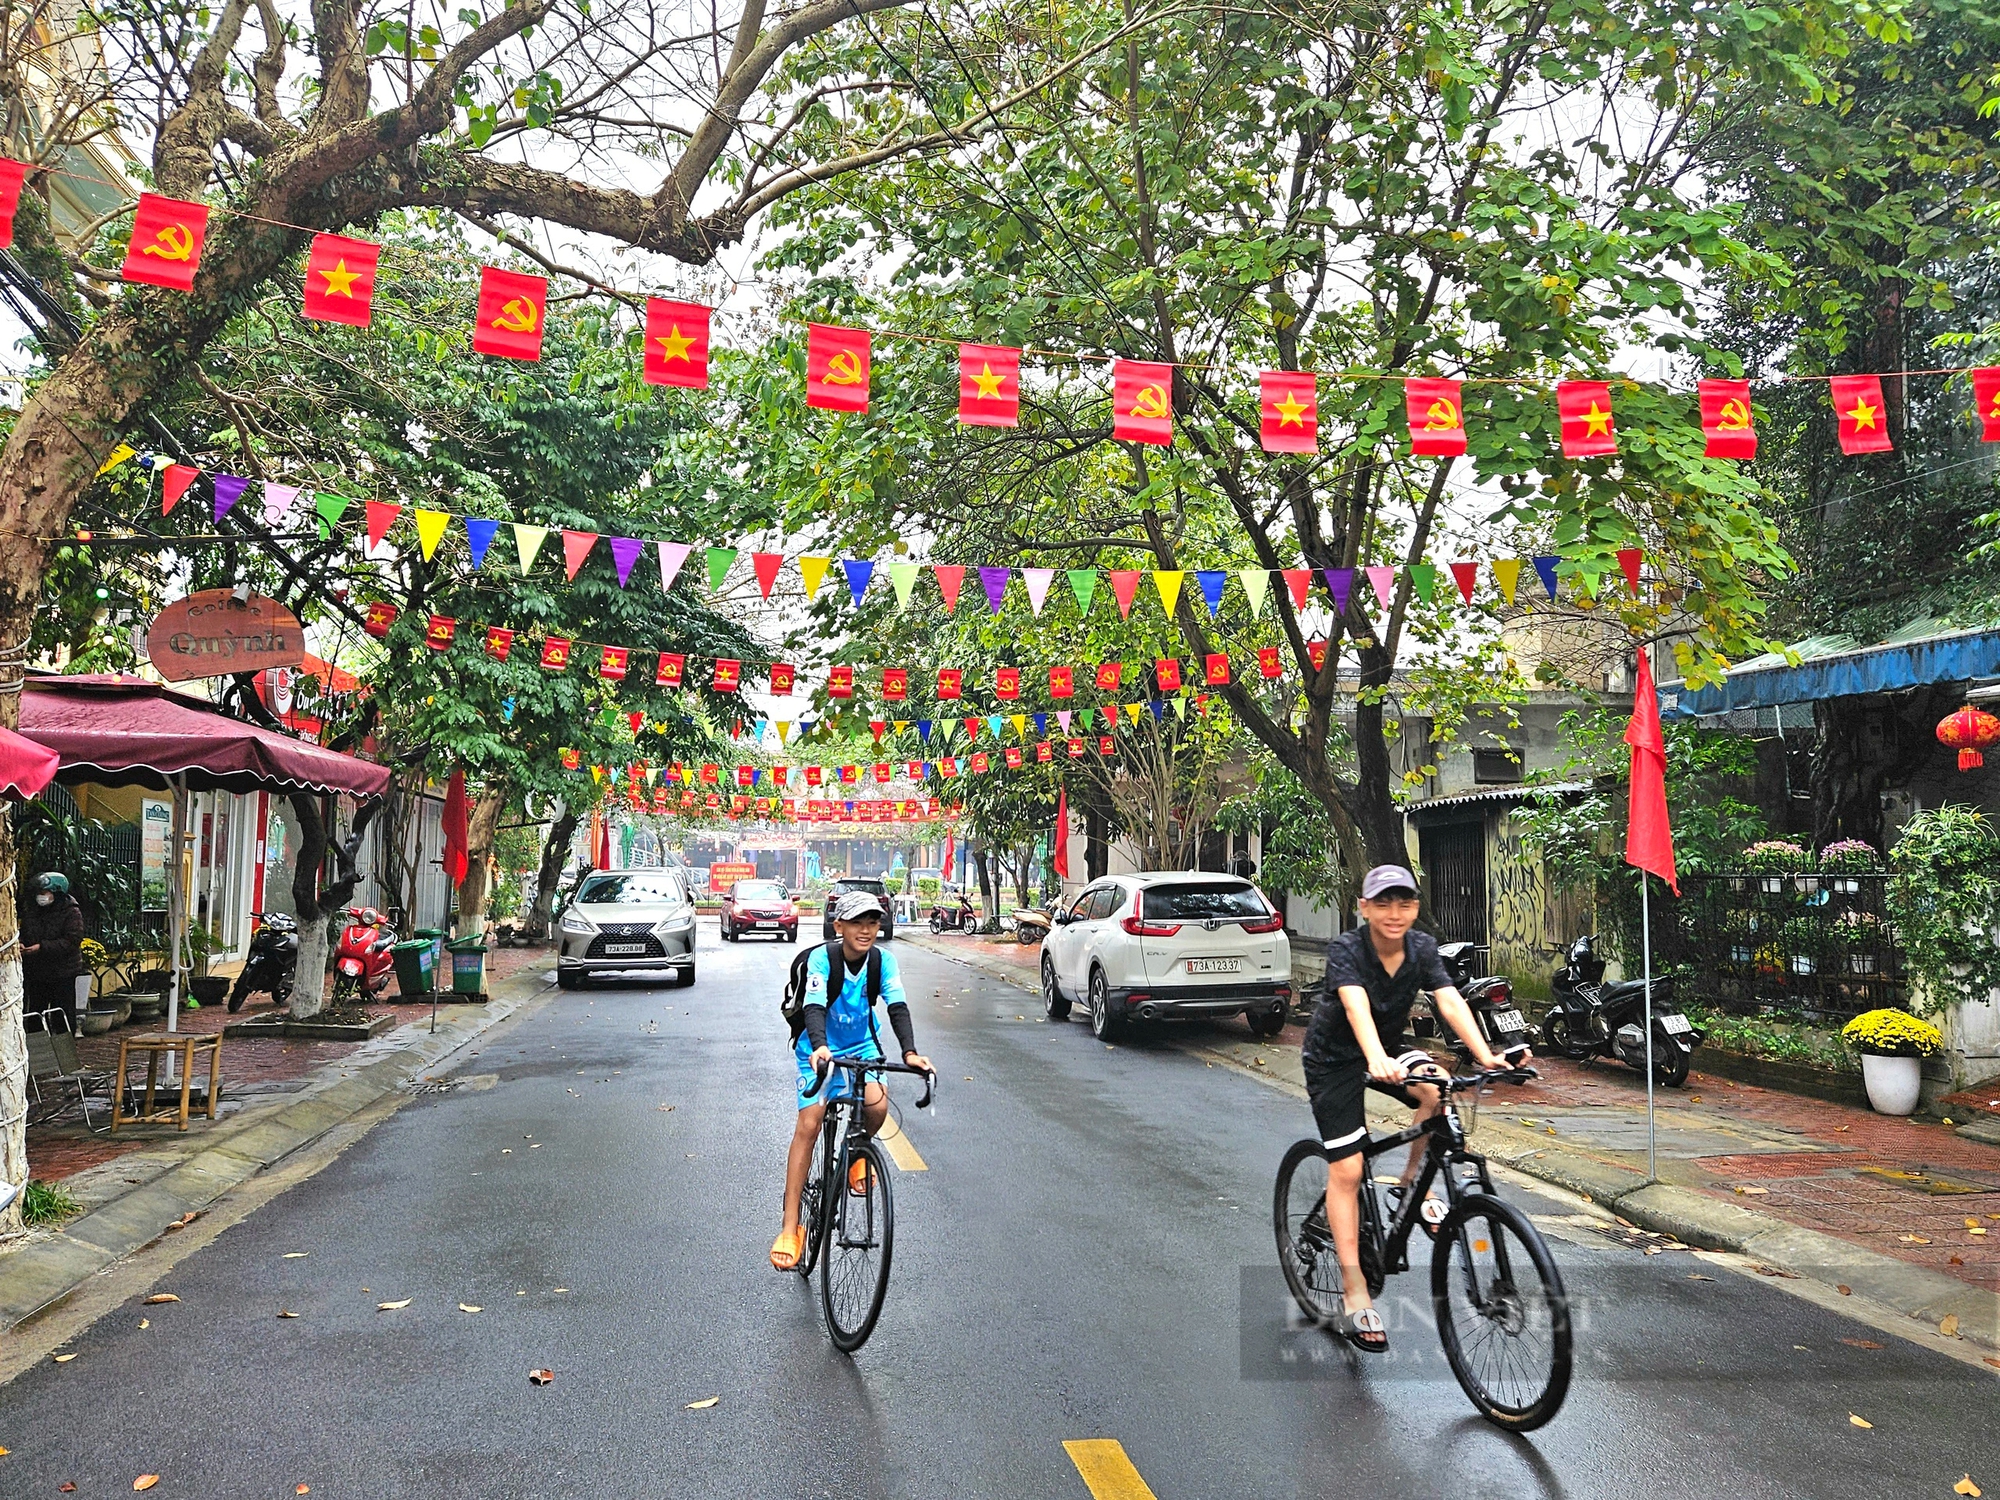 Tuyến đường rợp cờ đỏ sao vàng ở Quảng Bình gây xúc động- Ảnh 1.